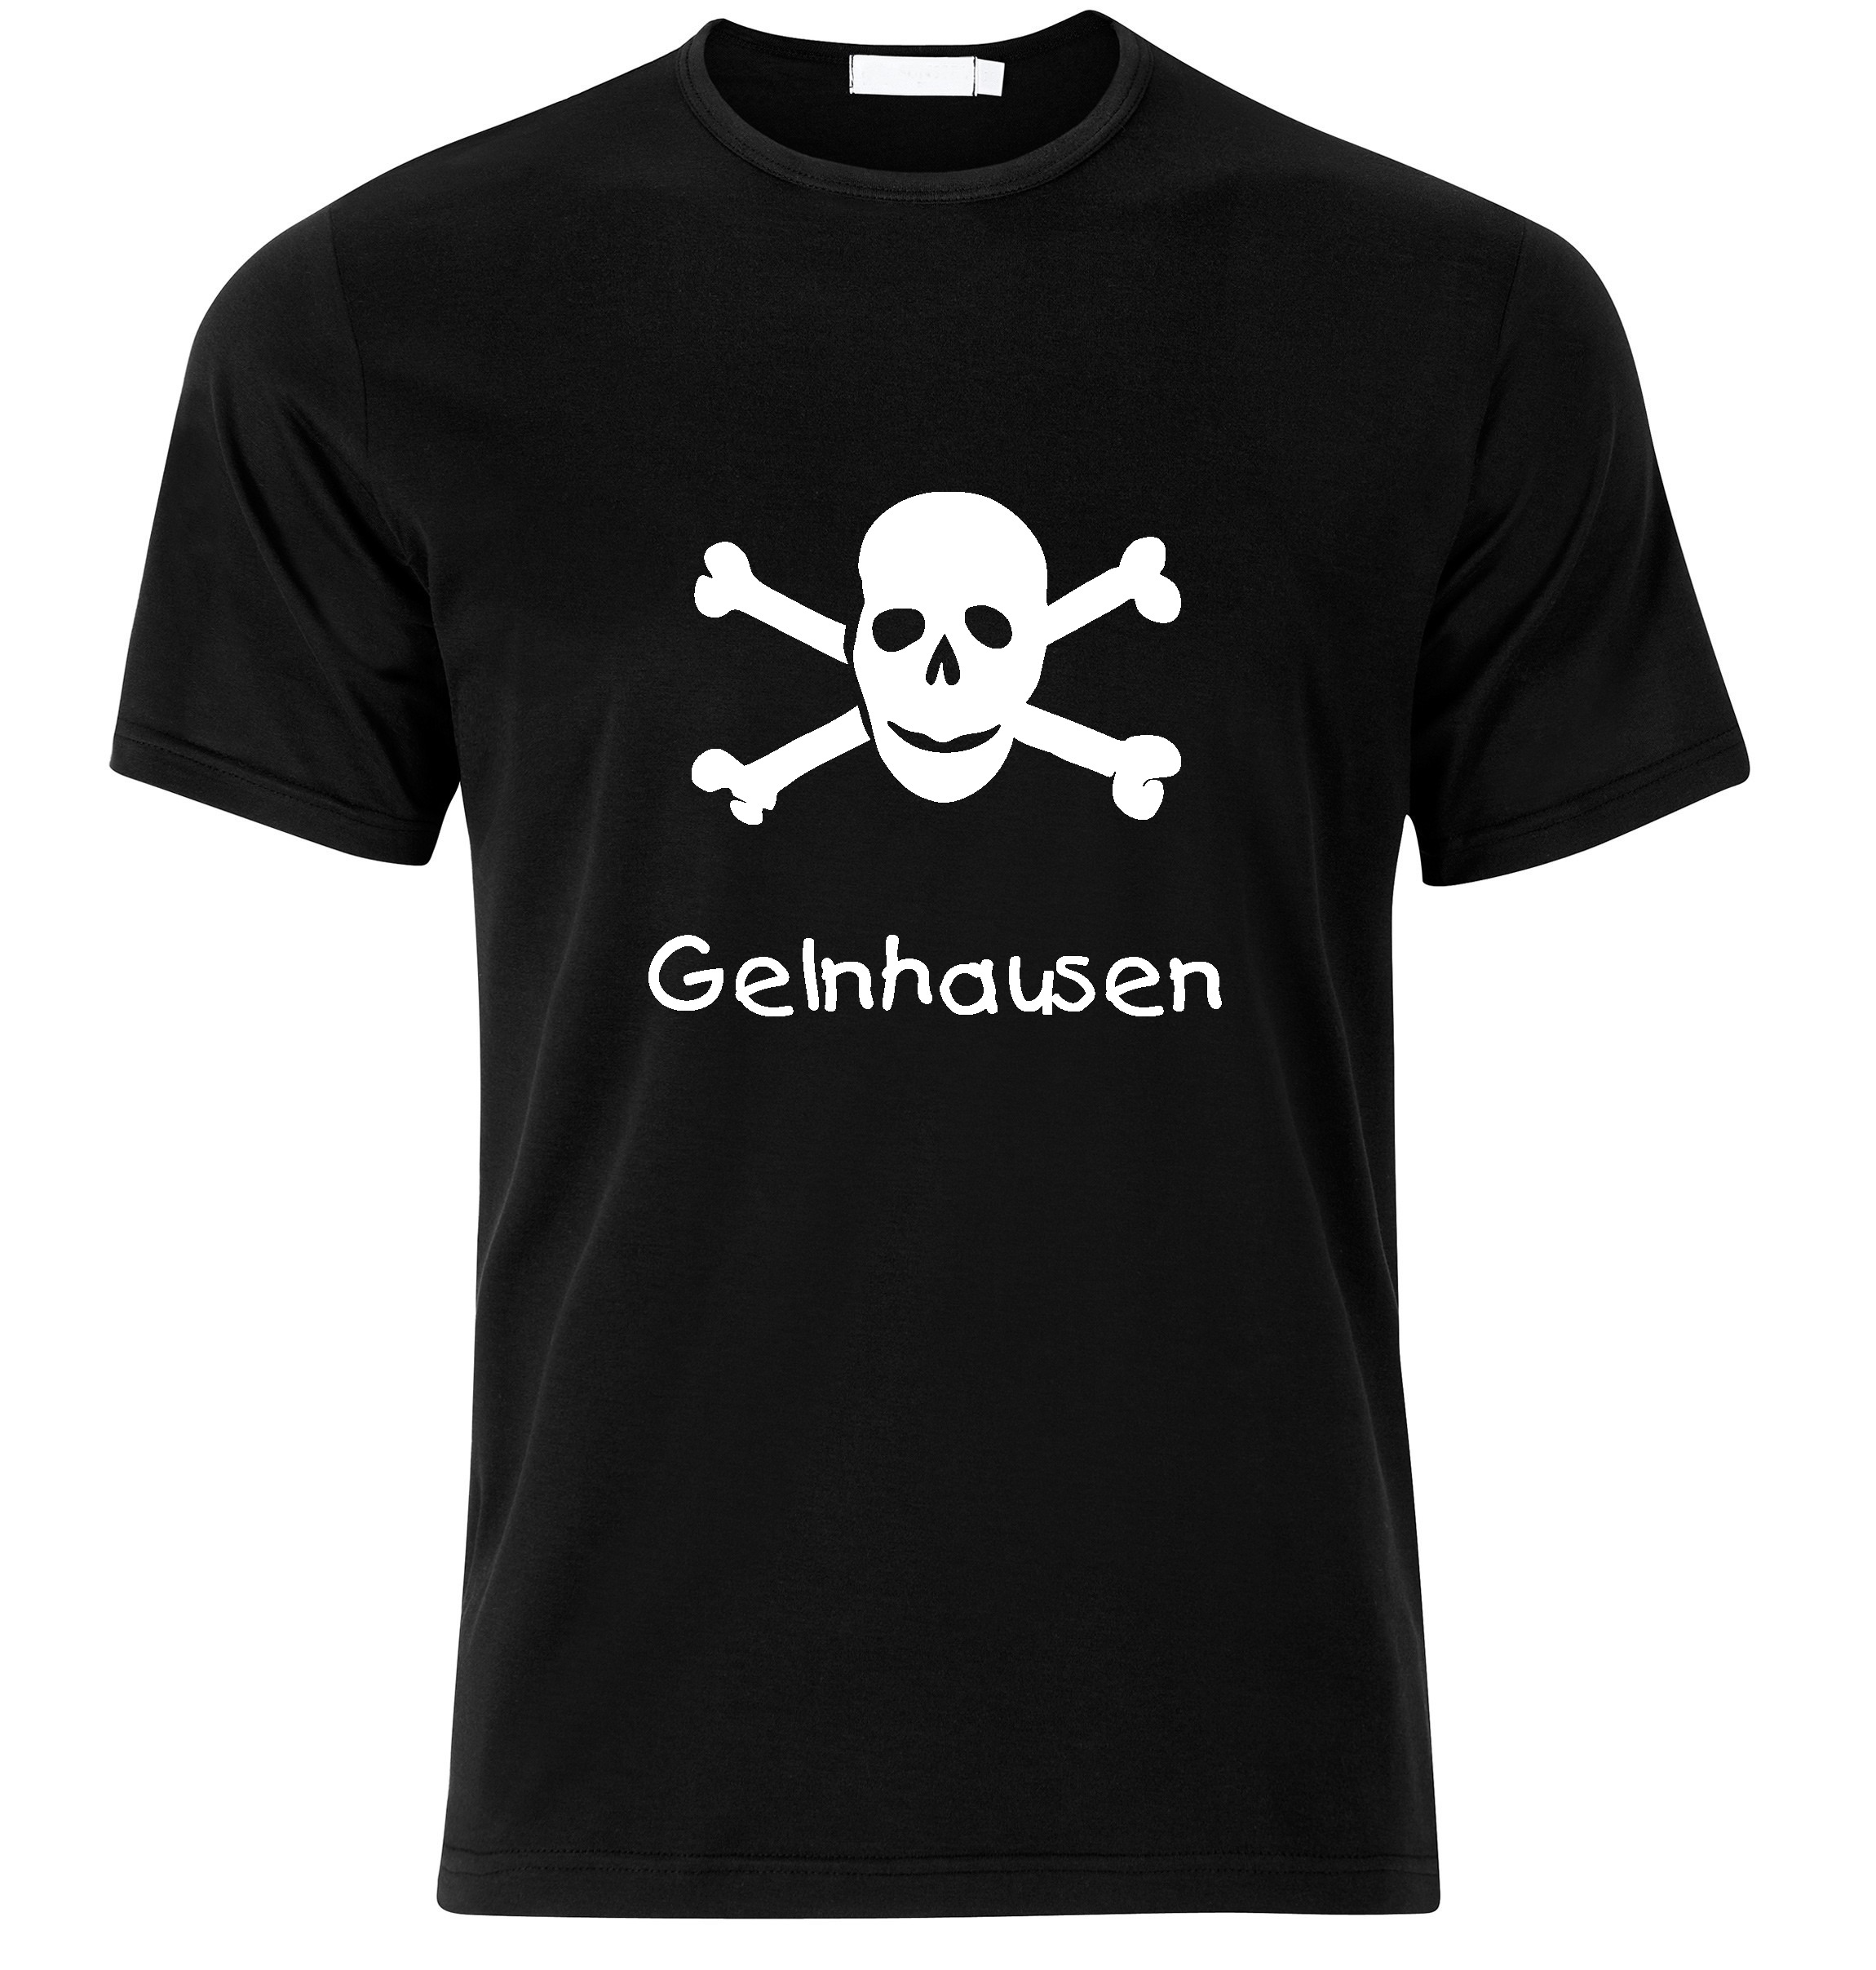 T-Shirt Gelnhausen Jolly Roger, Totenkopf